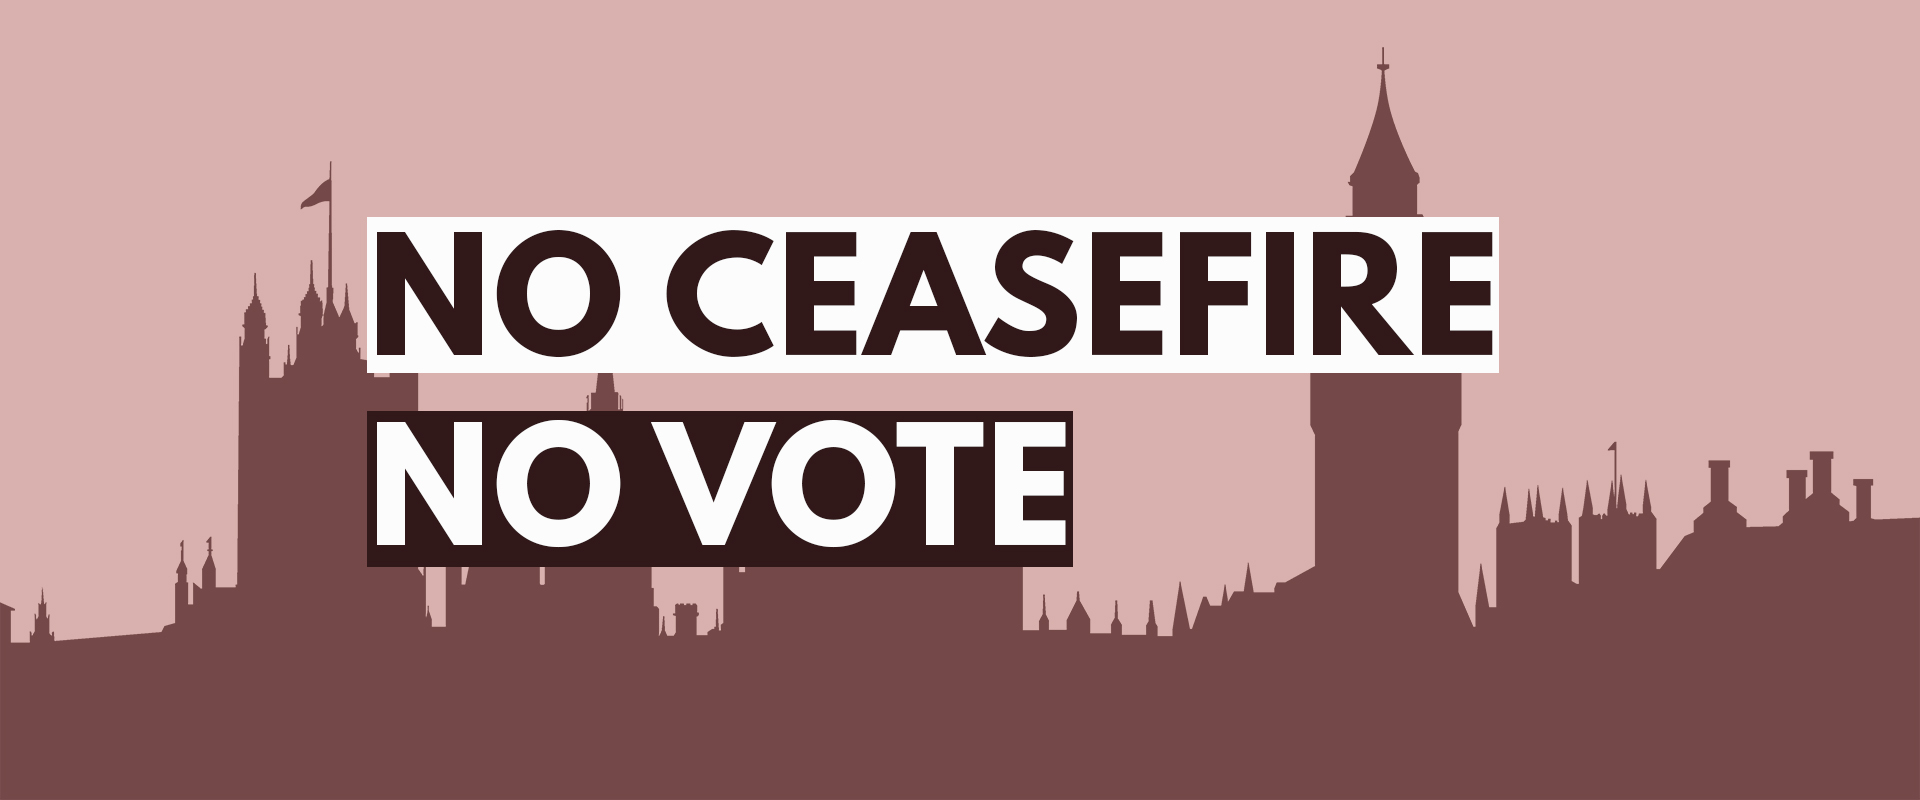 No ceasefire. No vote.